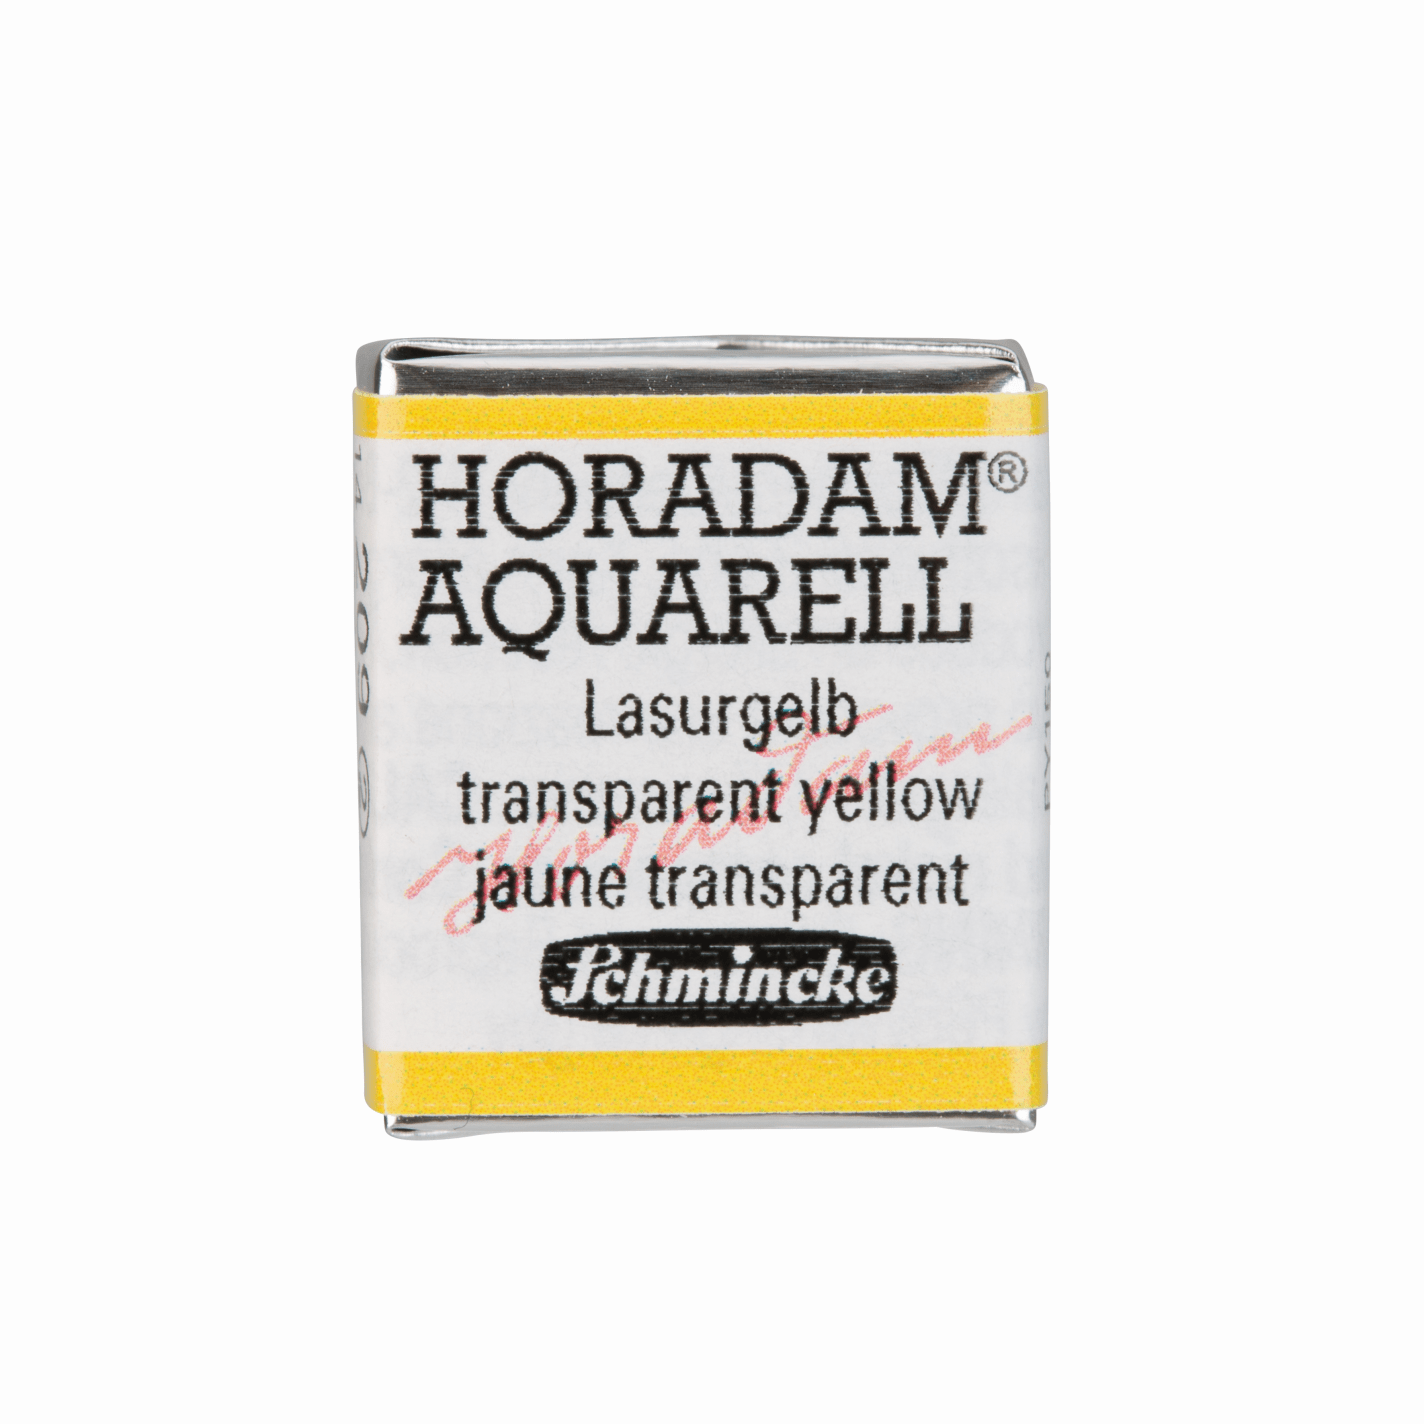 Schmincke Horadam Aquarell pans 1/2 pan Transparent Yellow